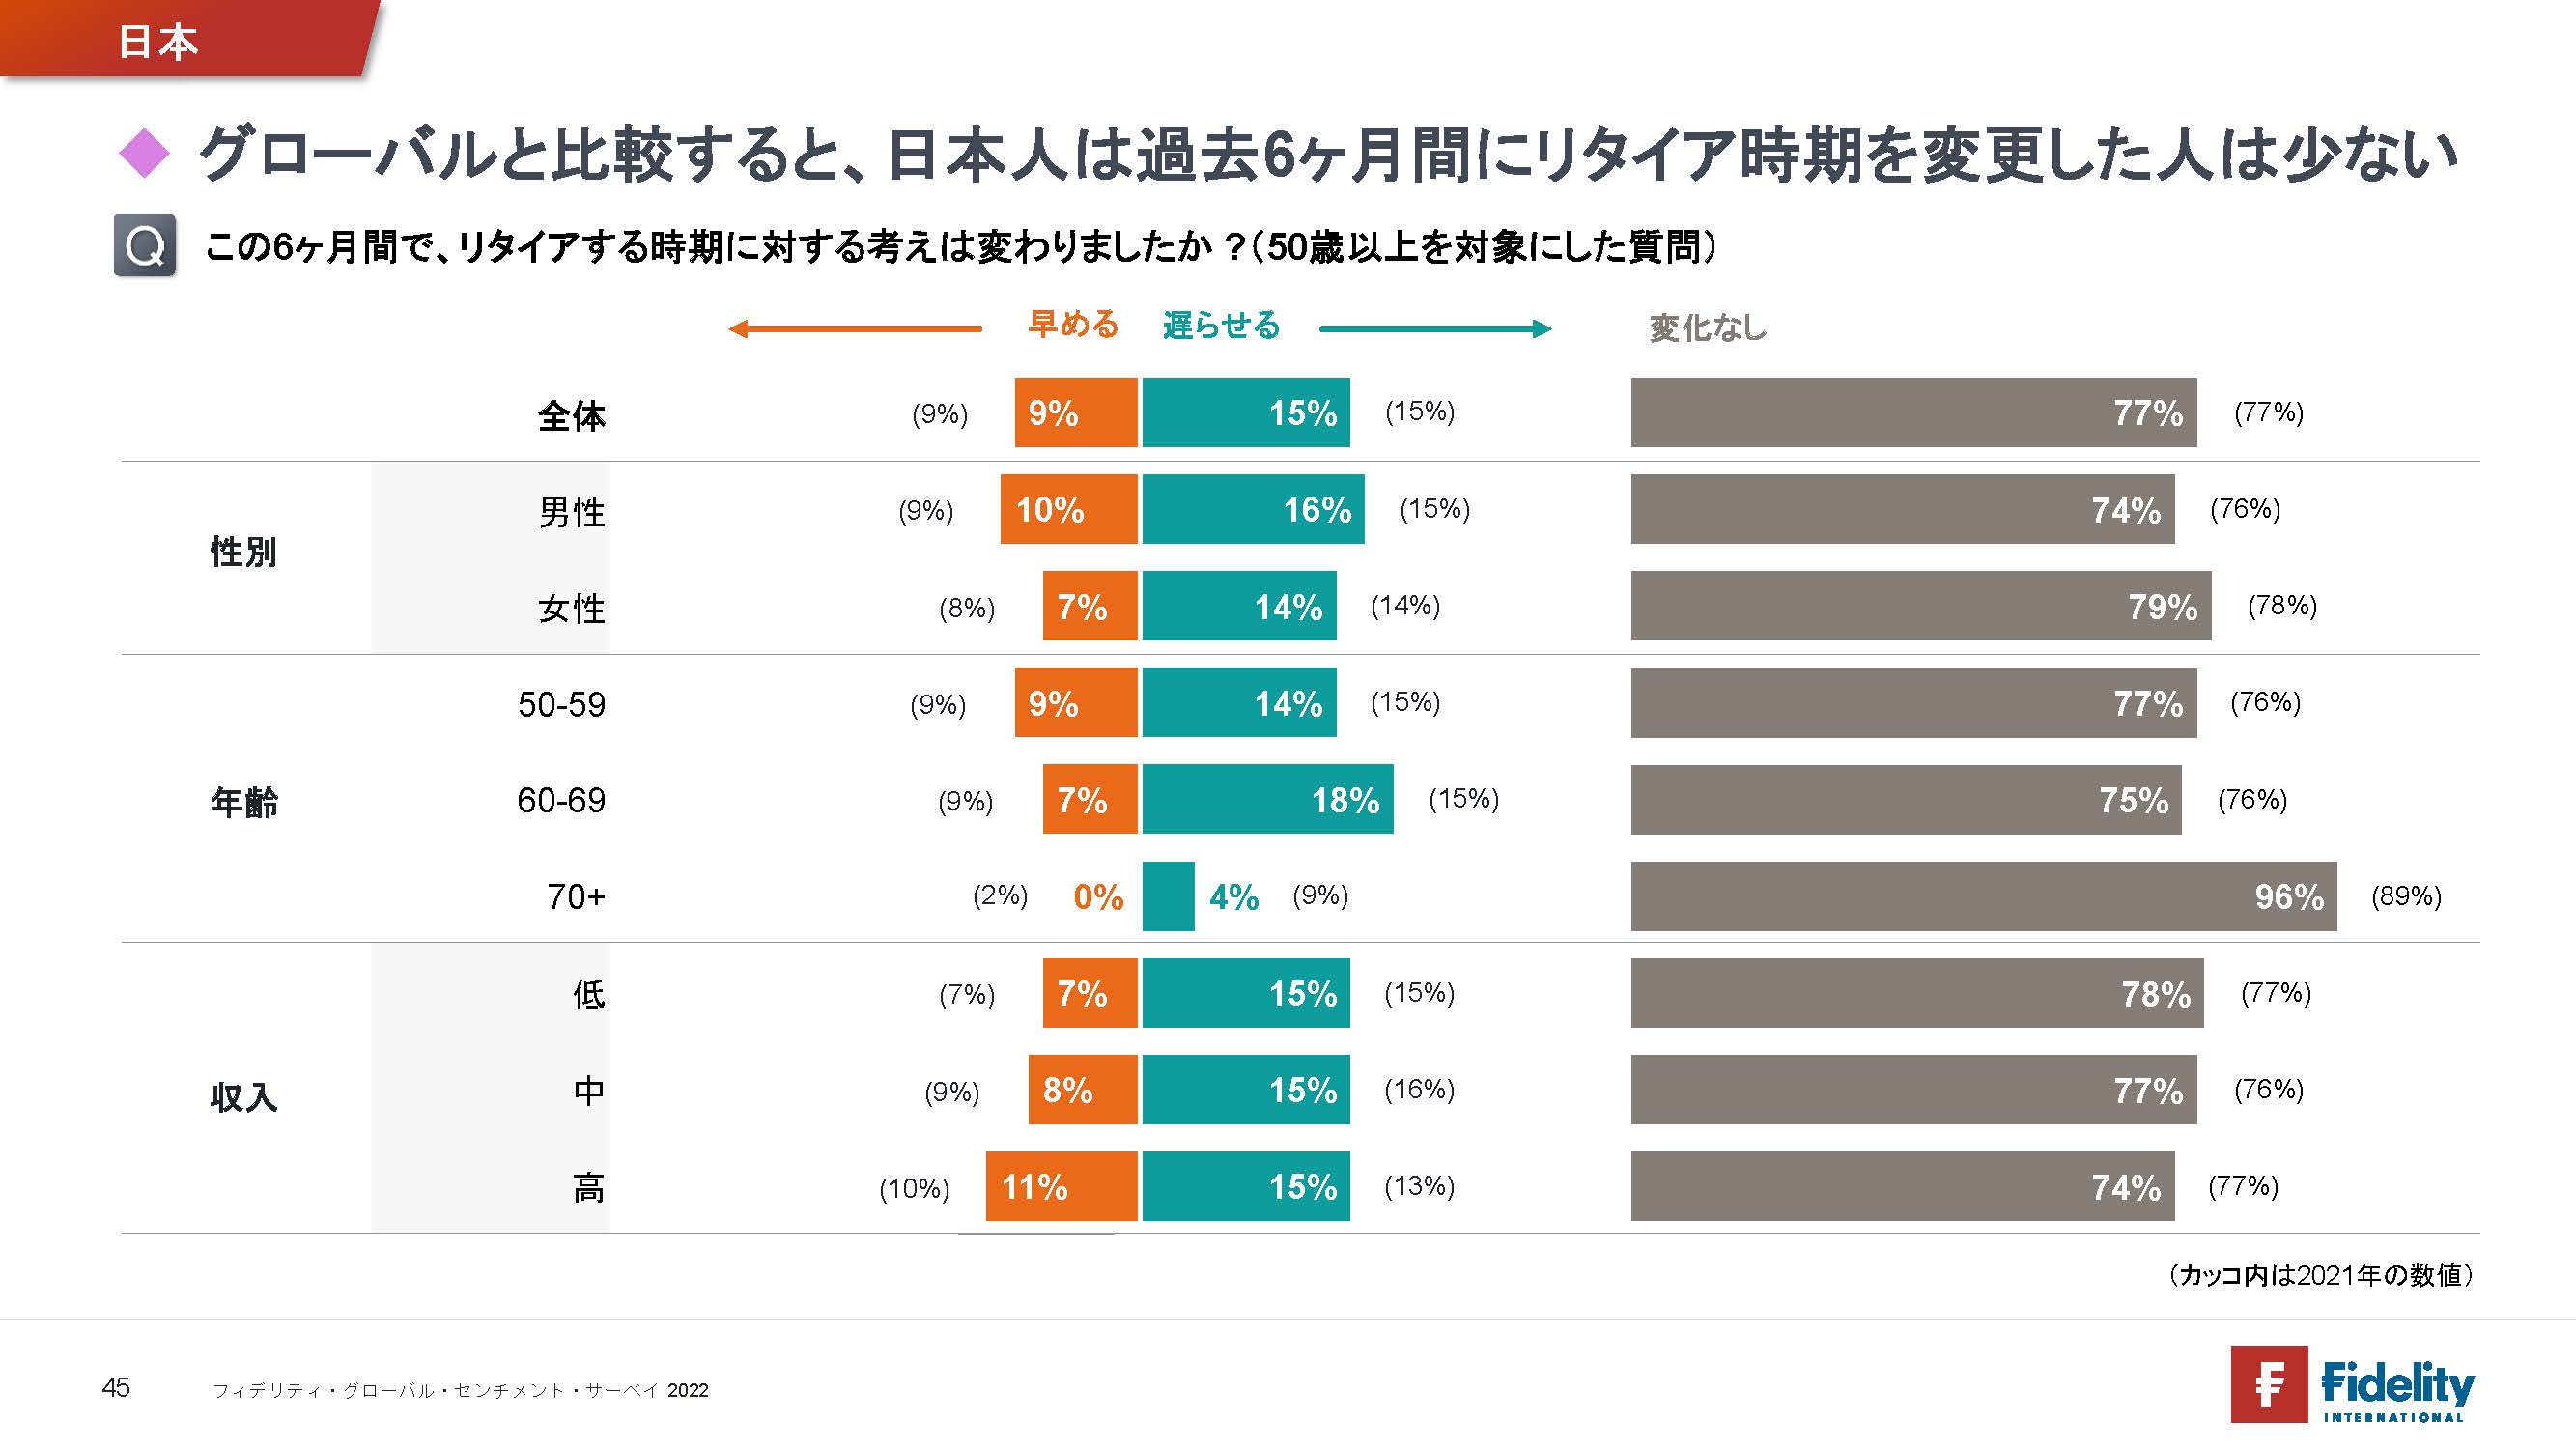 グローバルと比較すると、日本人は過去6ヶ月間にリタイア時期を変更した人は少ない